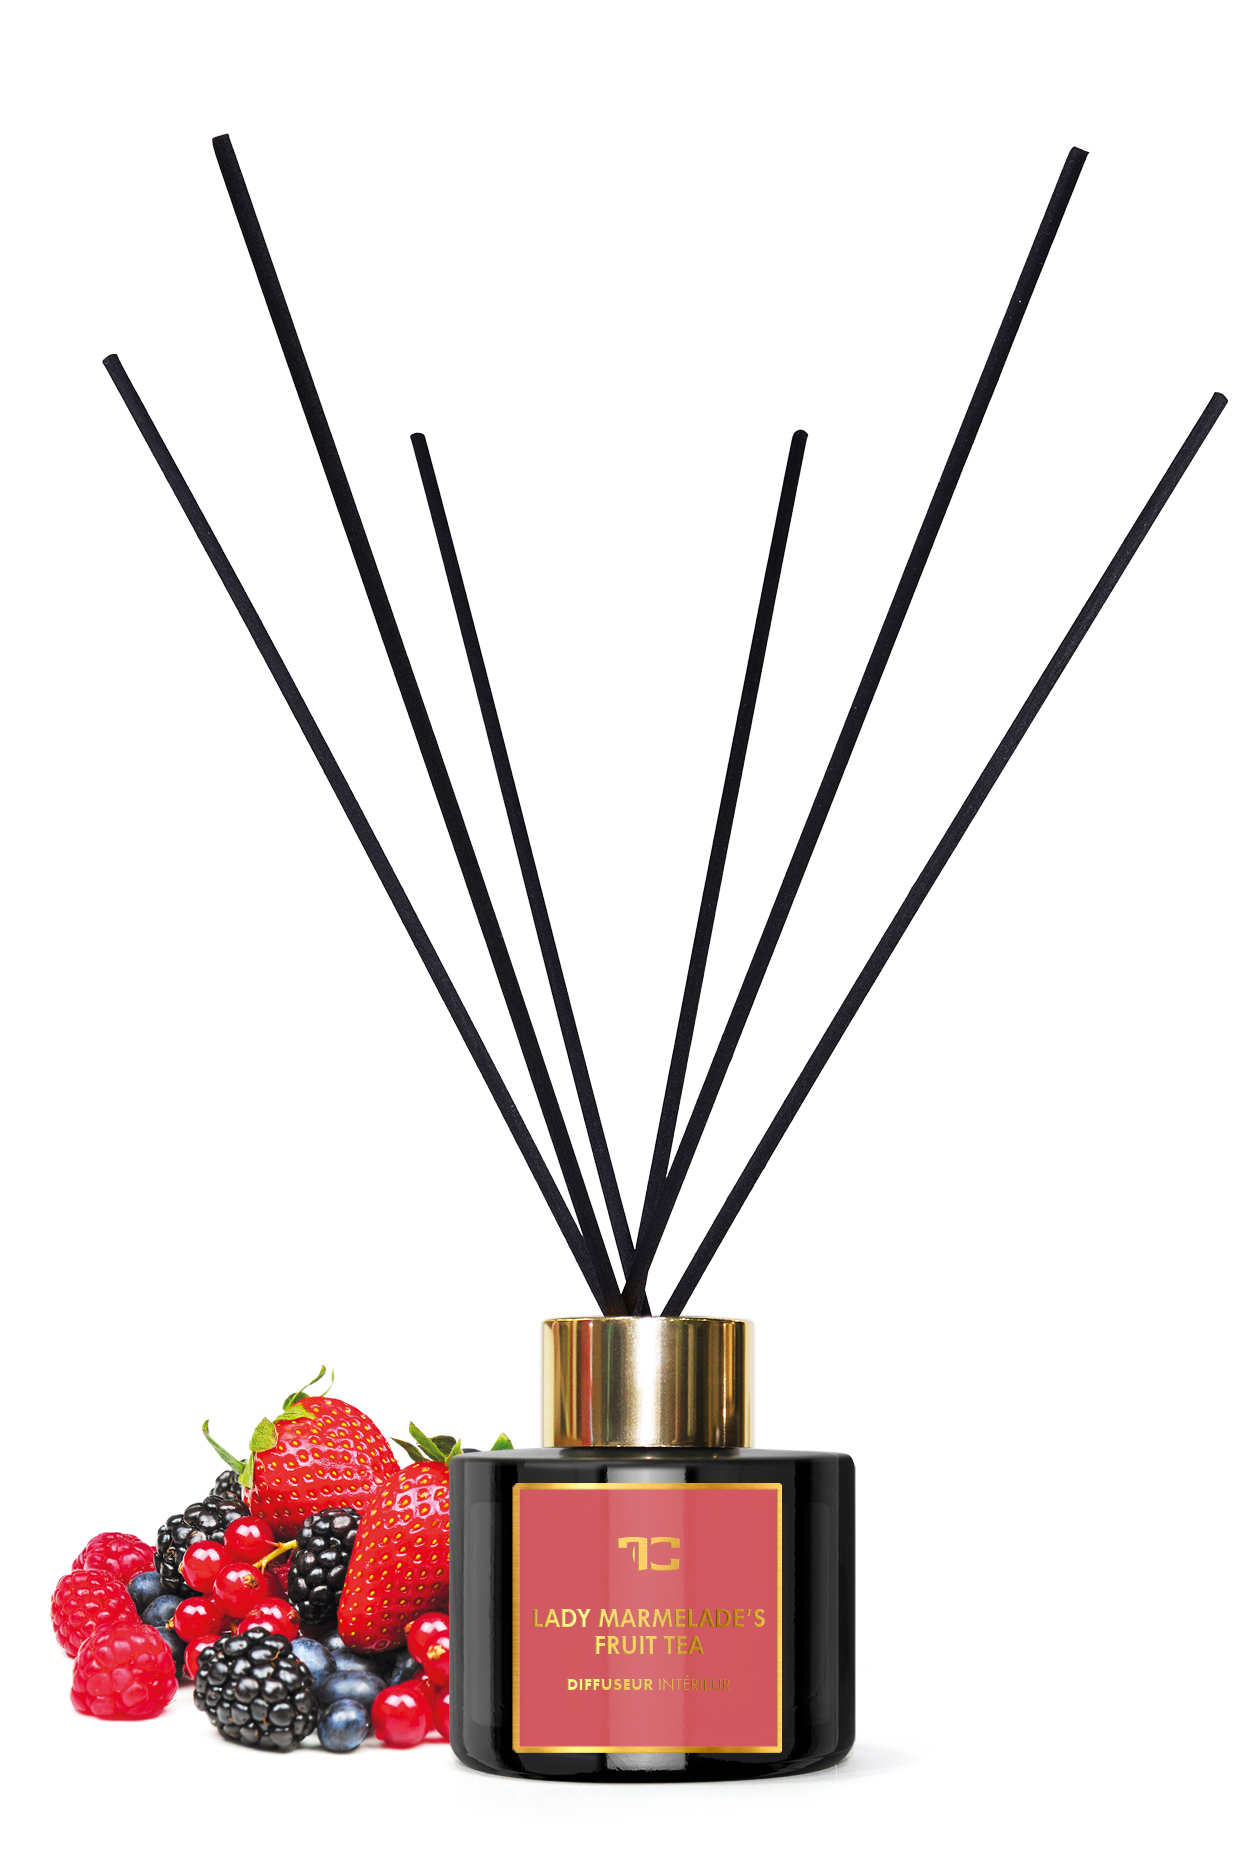 FC33404T-Interiérový tyčinkový bytový parfum 100 ml, LADY MARMELADE'S, DIFFUSEUR INTÉRIEUR